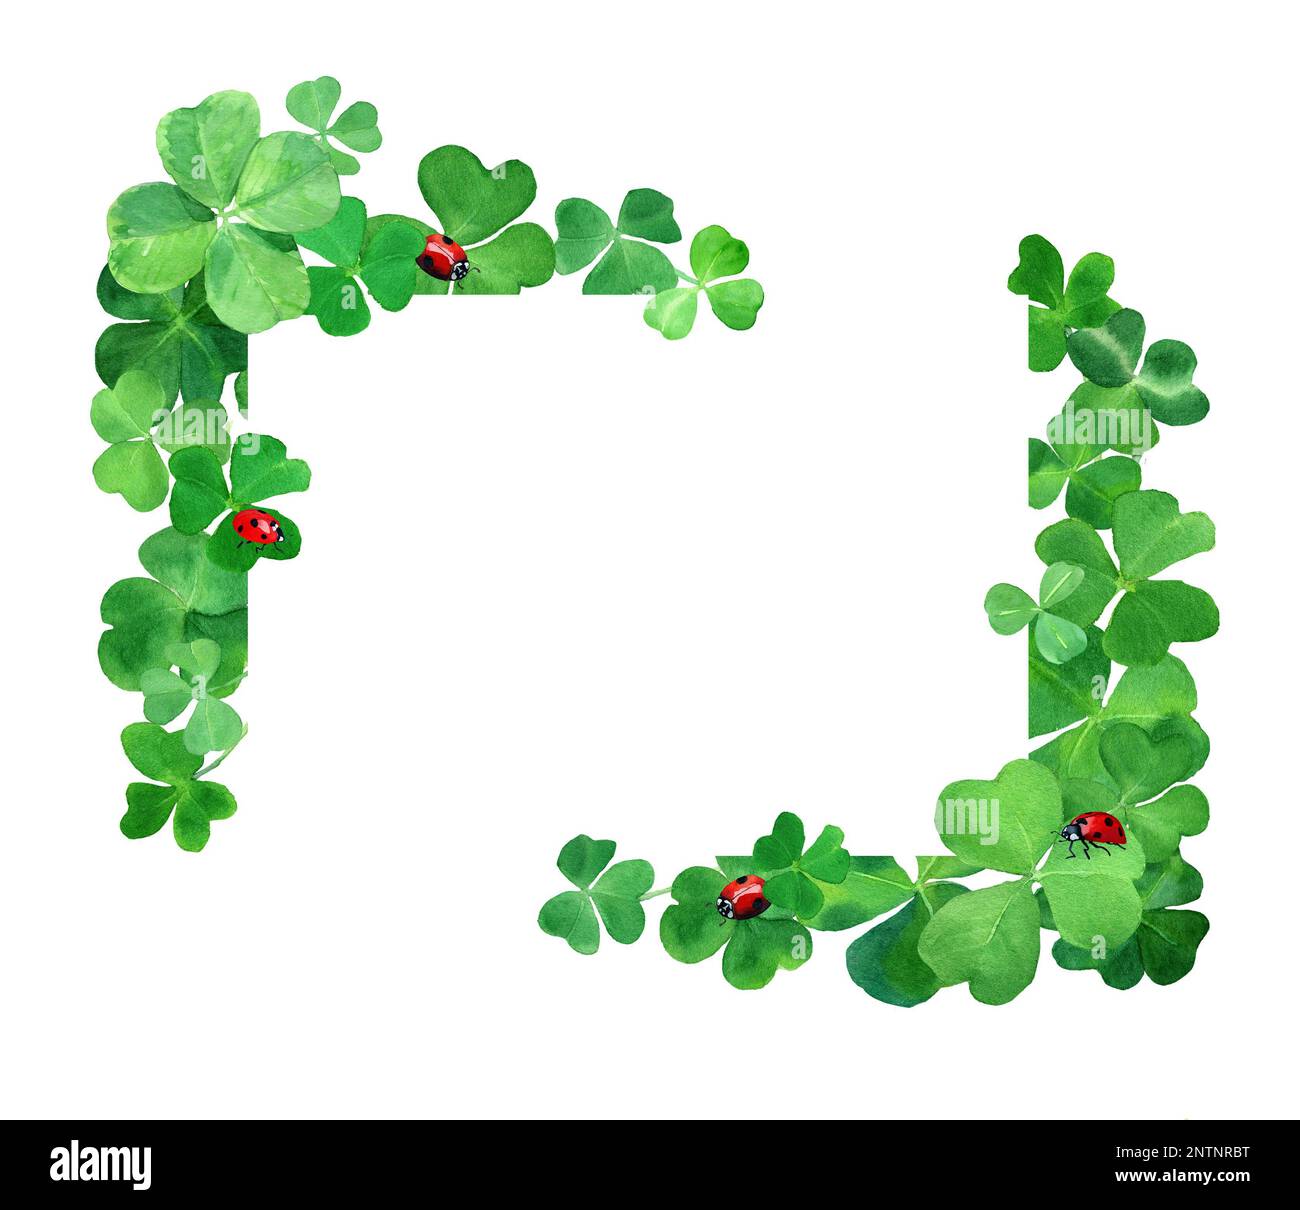 Aquarell gezeichnete Klee mit Marienkäfern. Botanik-Rahmendarstellung mit grünem Kleegras und roten Käfern. Der Tag des Heiligen Patrick. Stockfoto